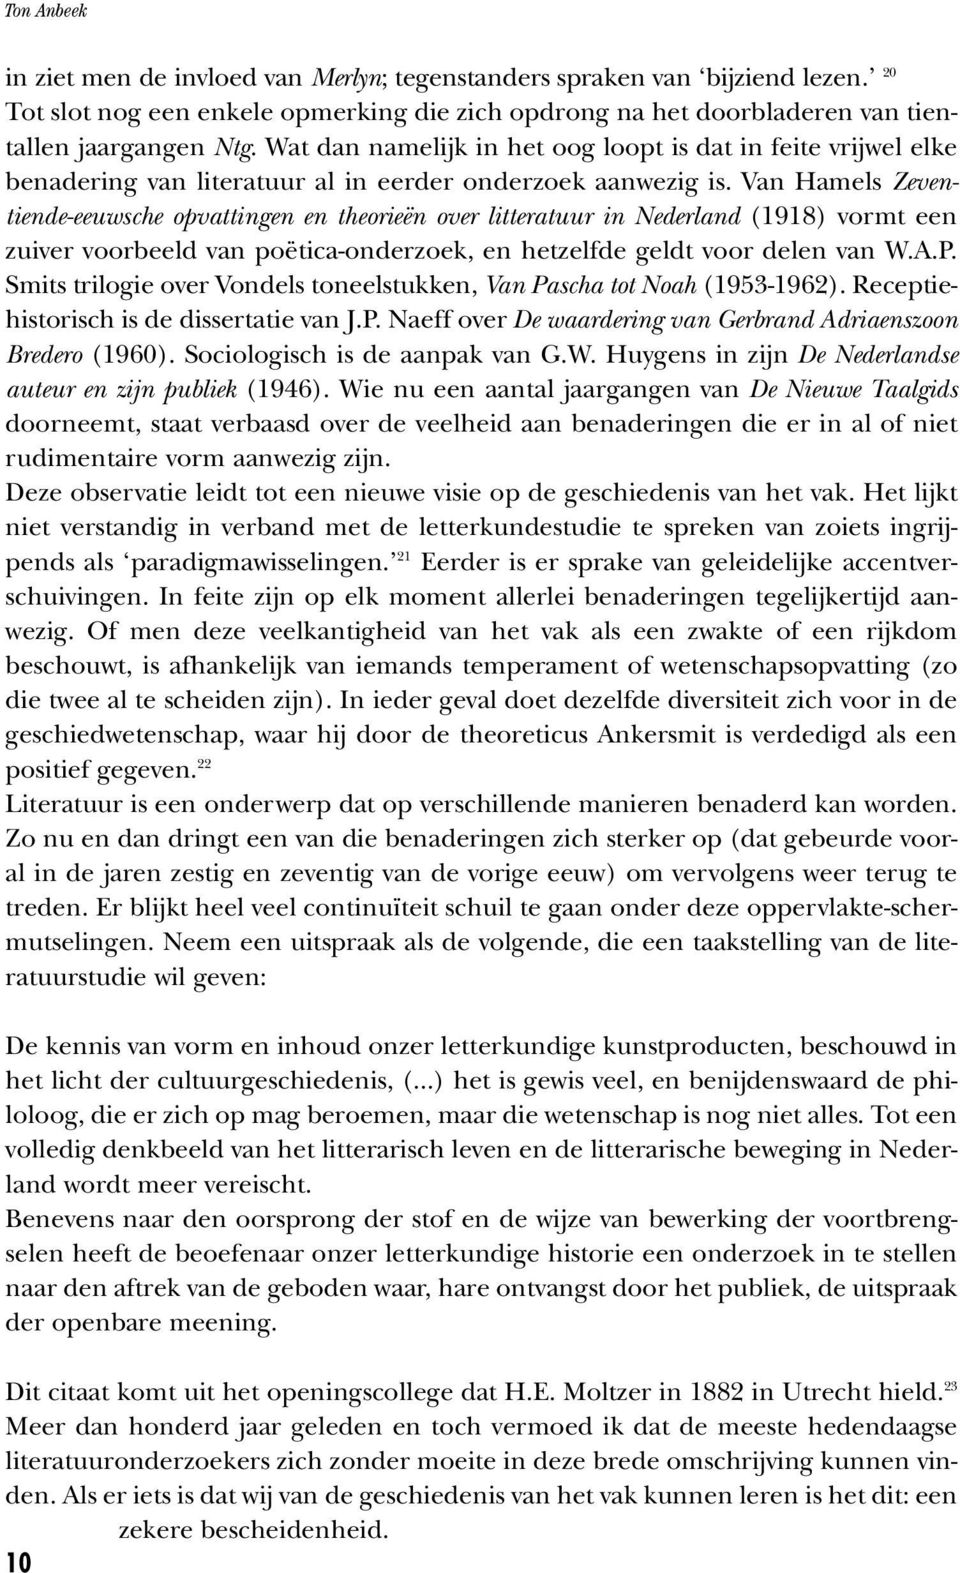 Van Hamels Zeventiende-eeuwsche opvattingen en theorieën over litteratuur in Nederland (1918) vormt een zuiver voorbeeld van poëtica-onderzoek, en hetzelfde geldt voor delen van W.A.P.